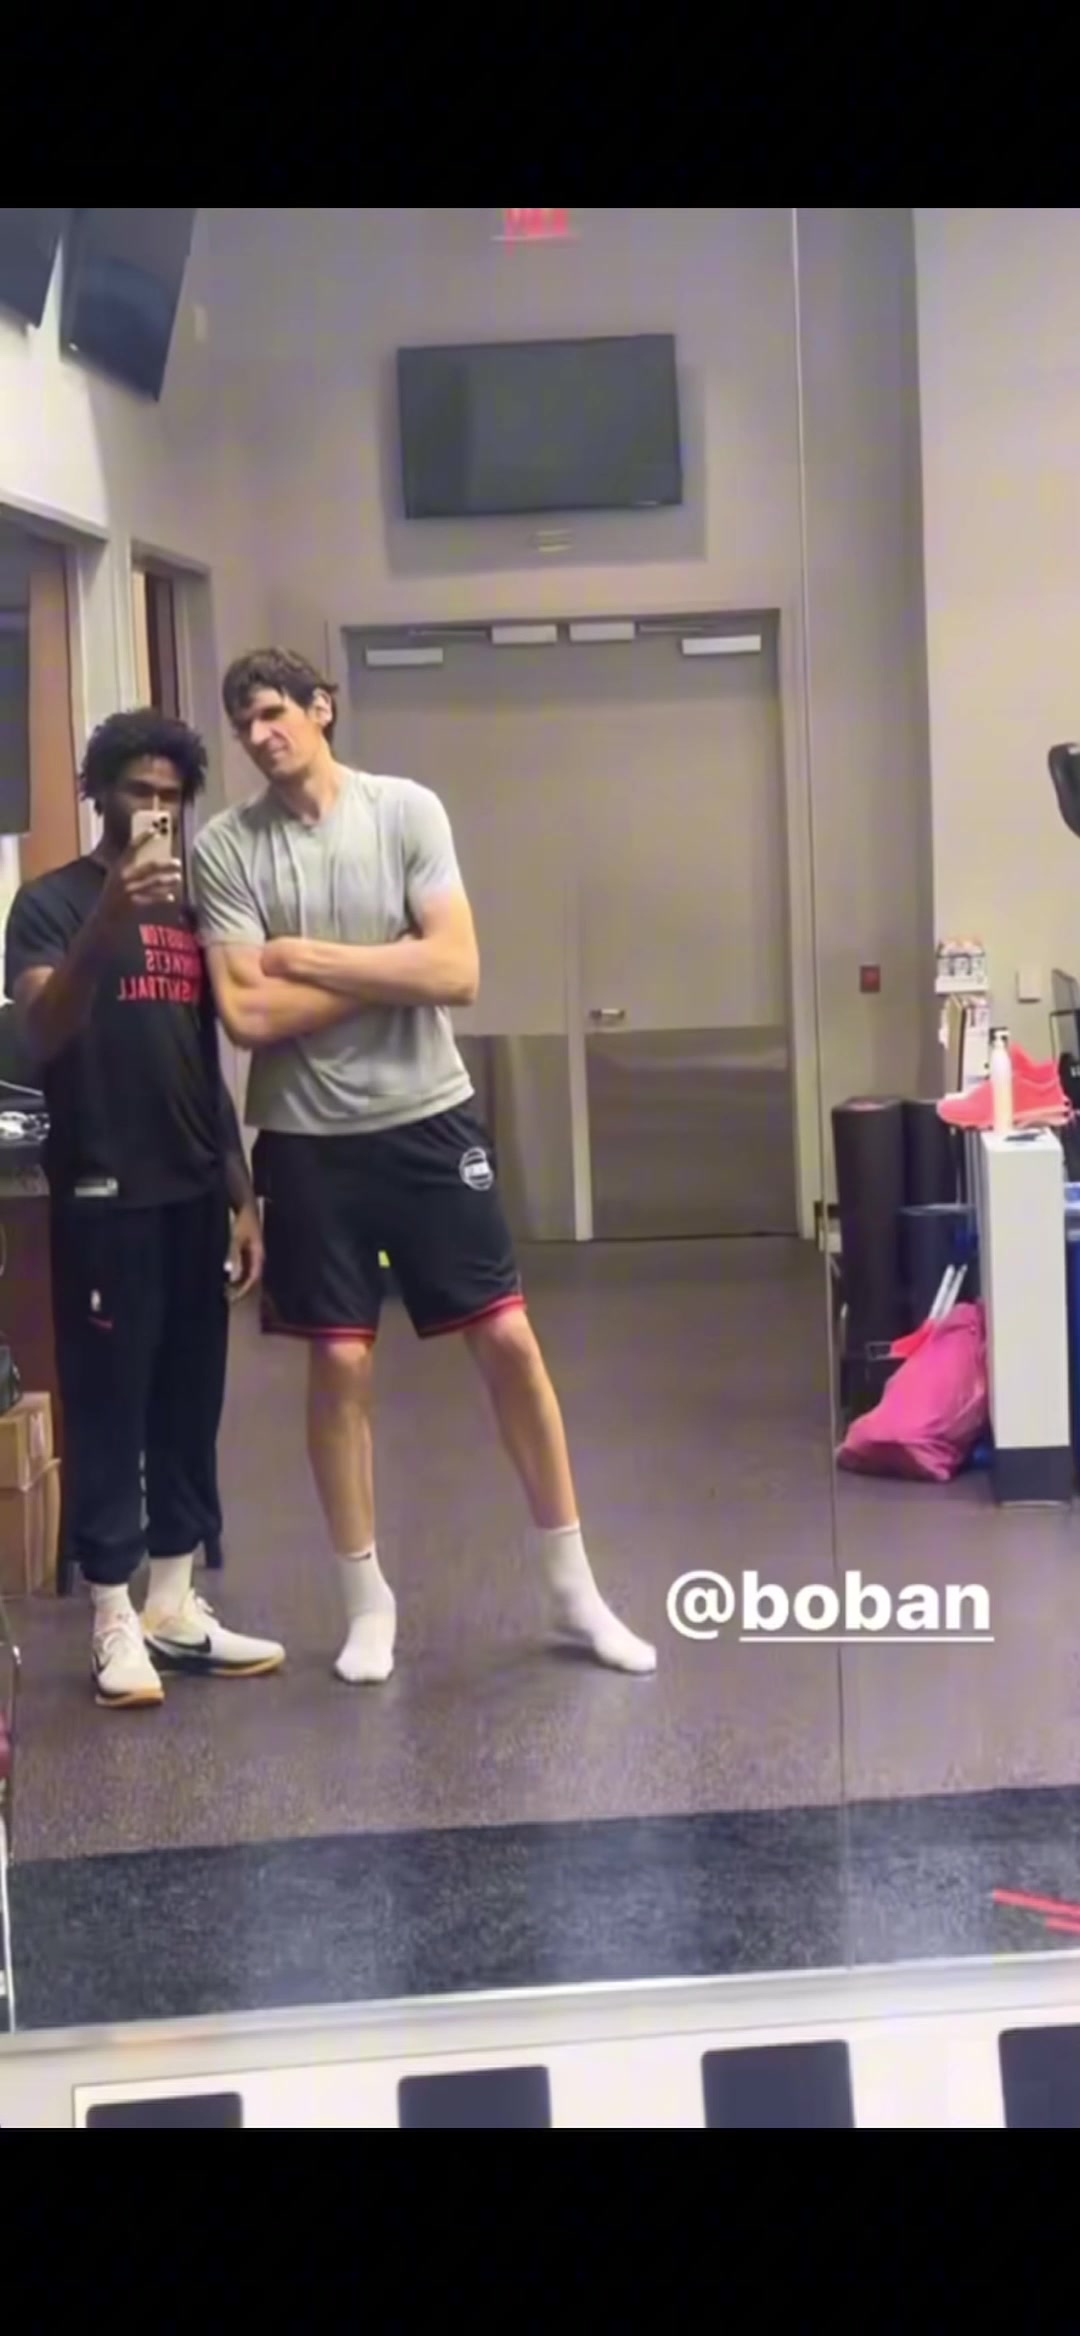 伊森和博班这干啥呢，在健身房里拍逗比视频？